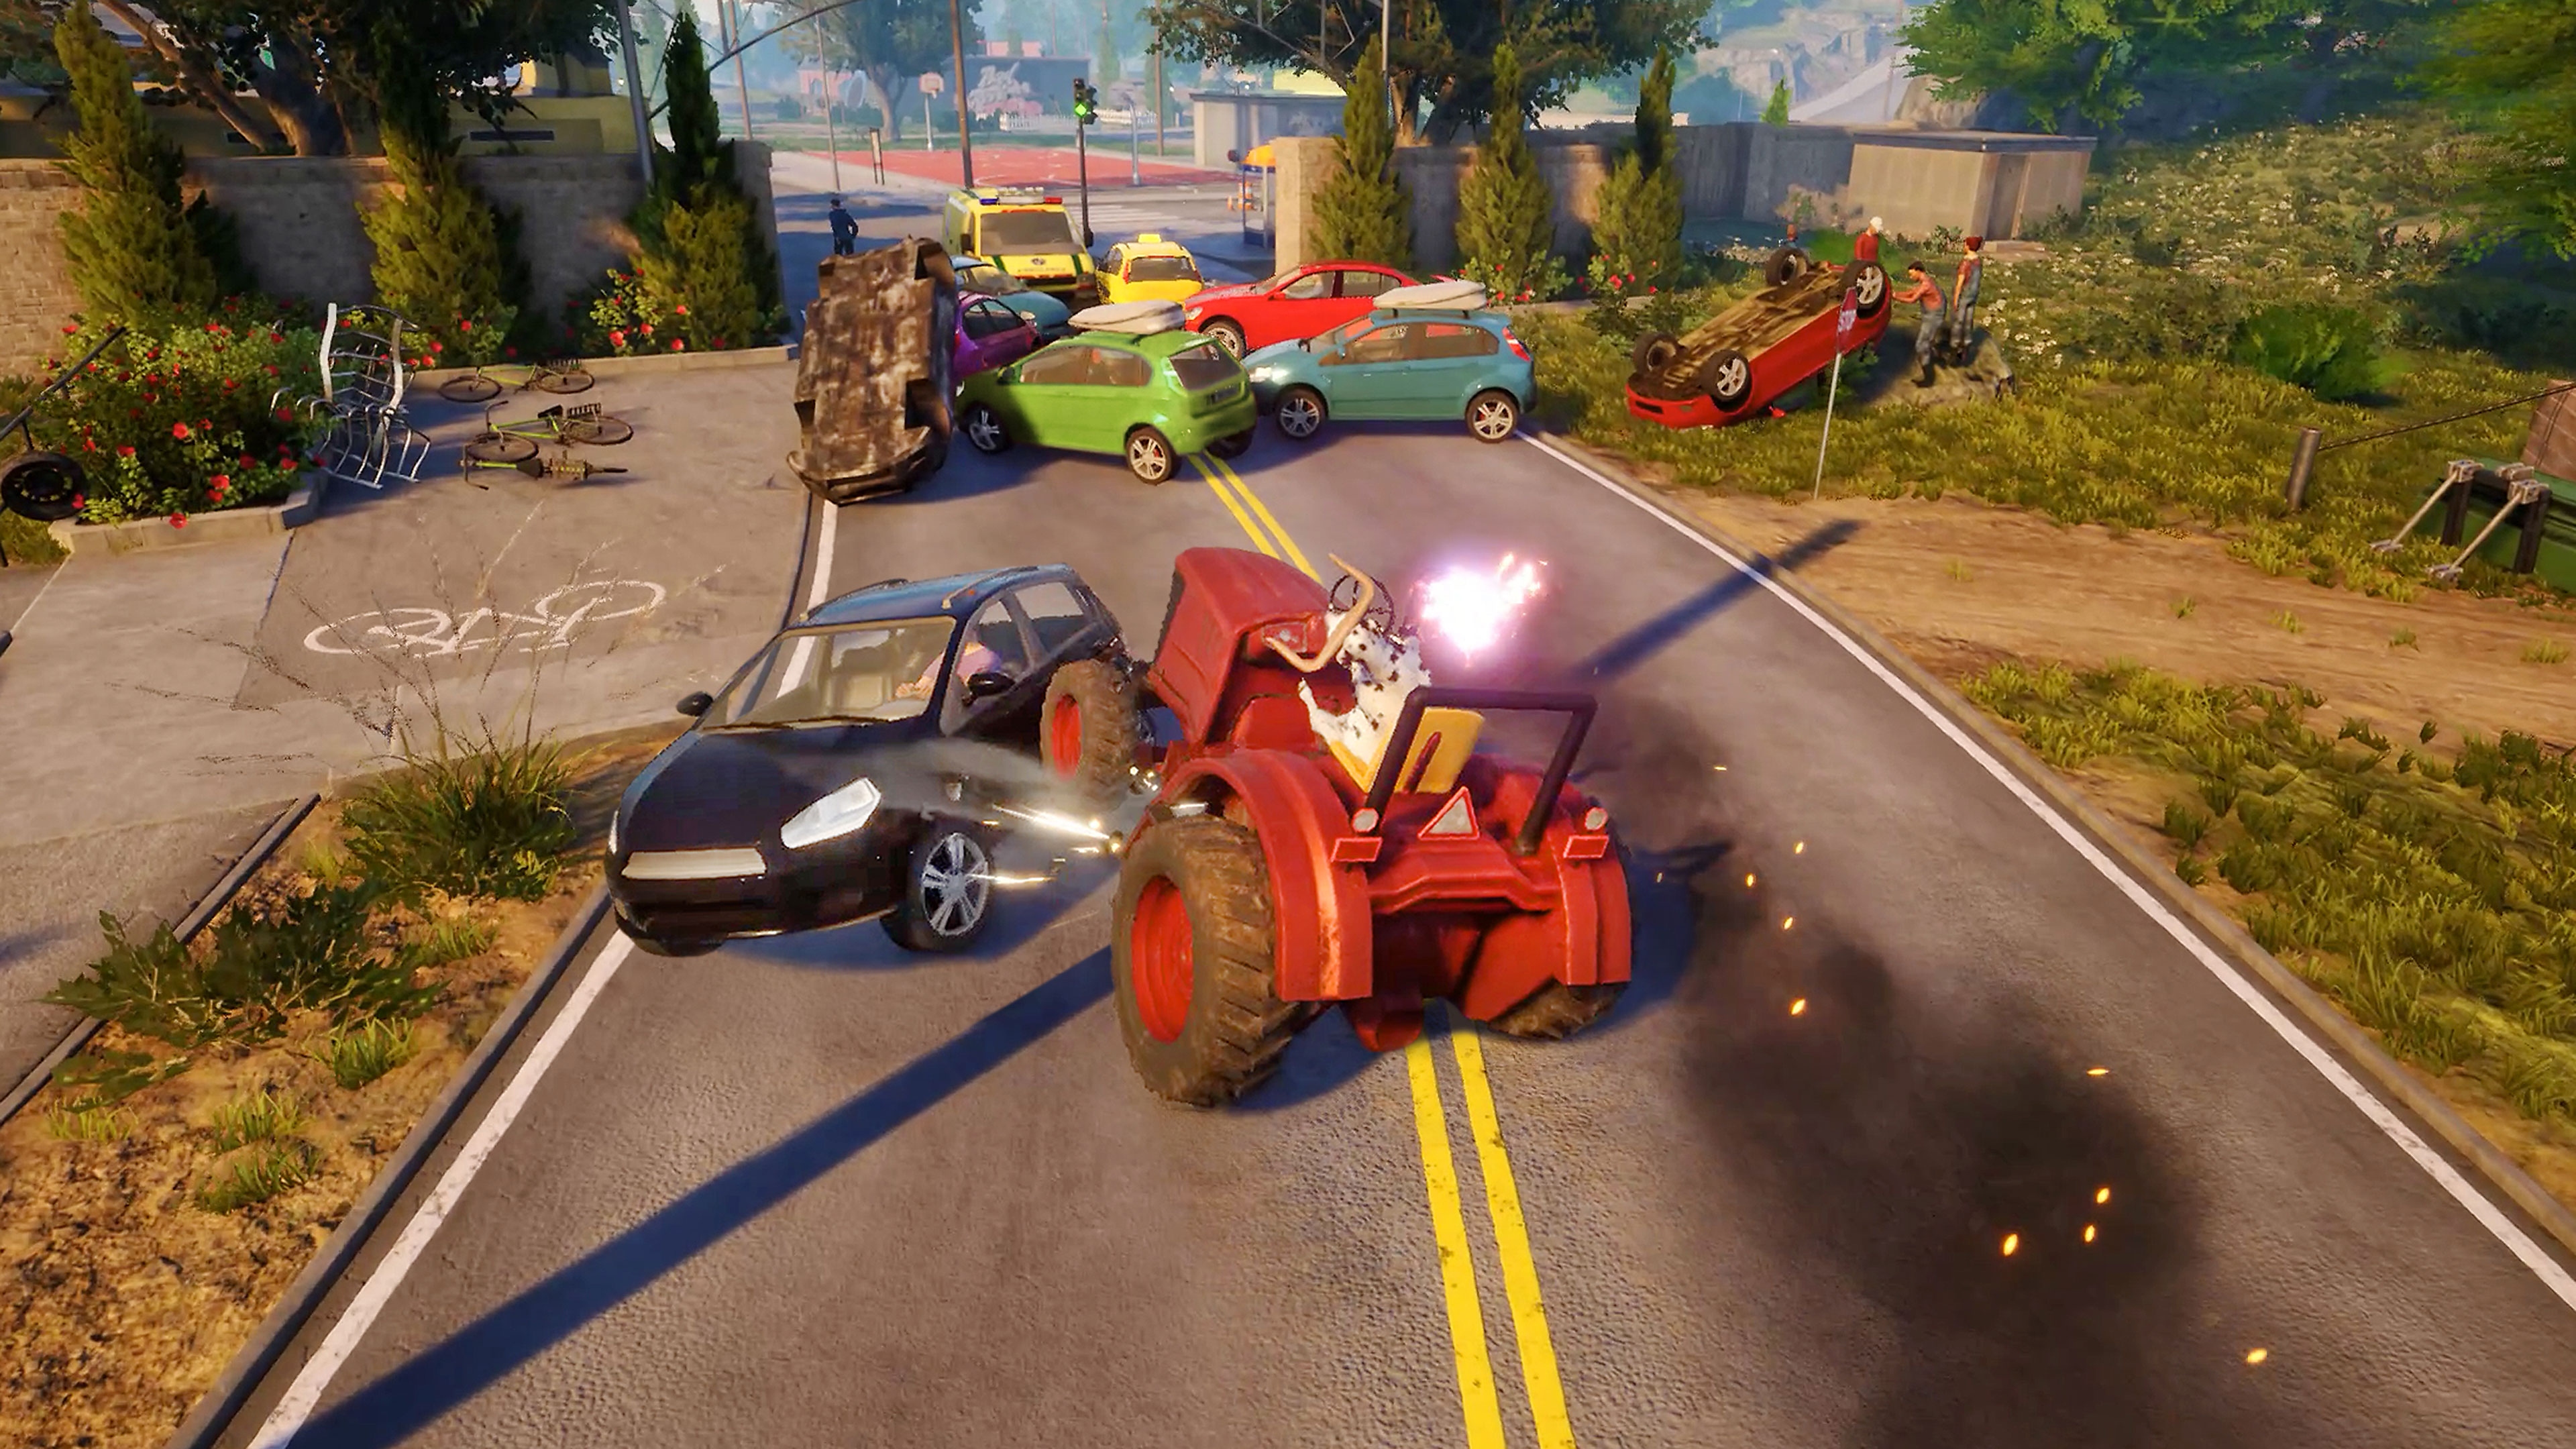 Captura de pantalla de Goat Simulator 3 que muestra un tractor que va a chocar con un carro